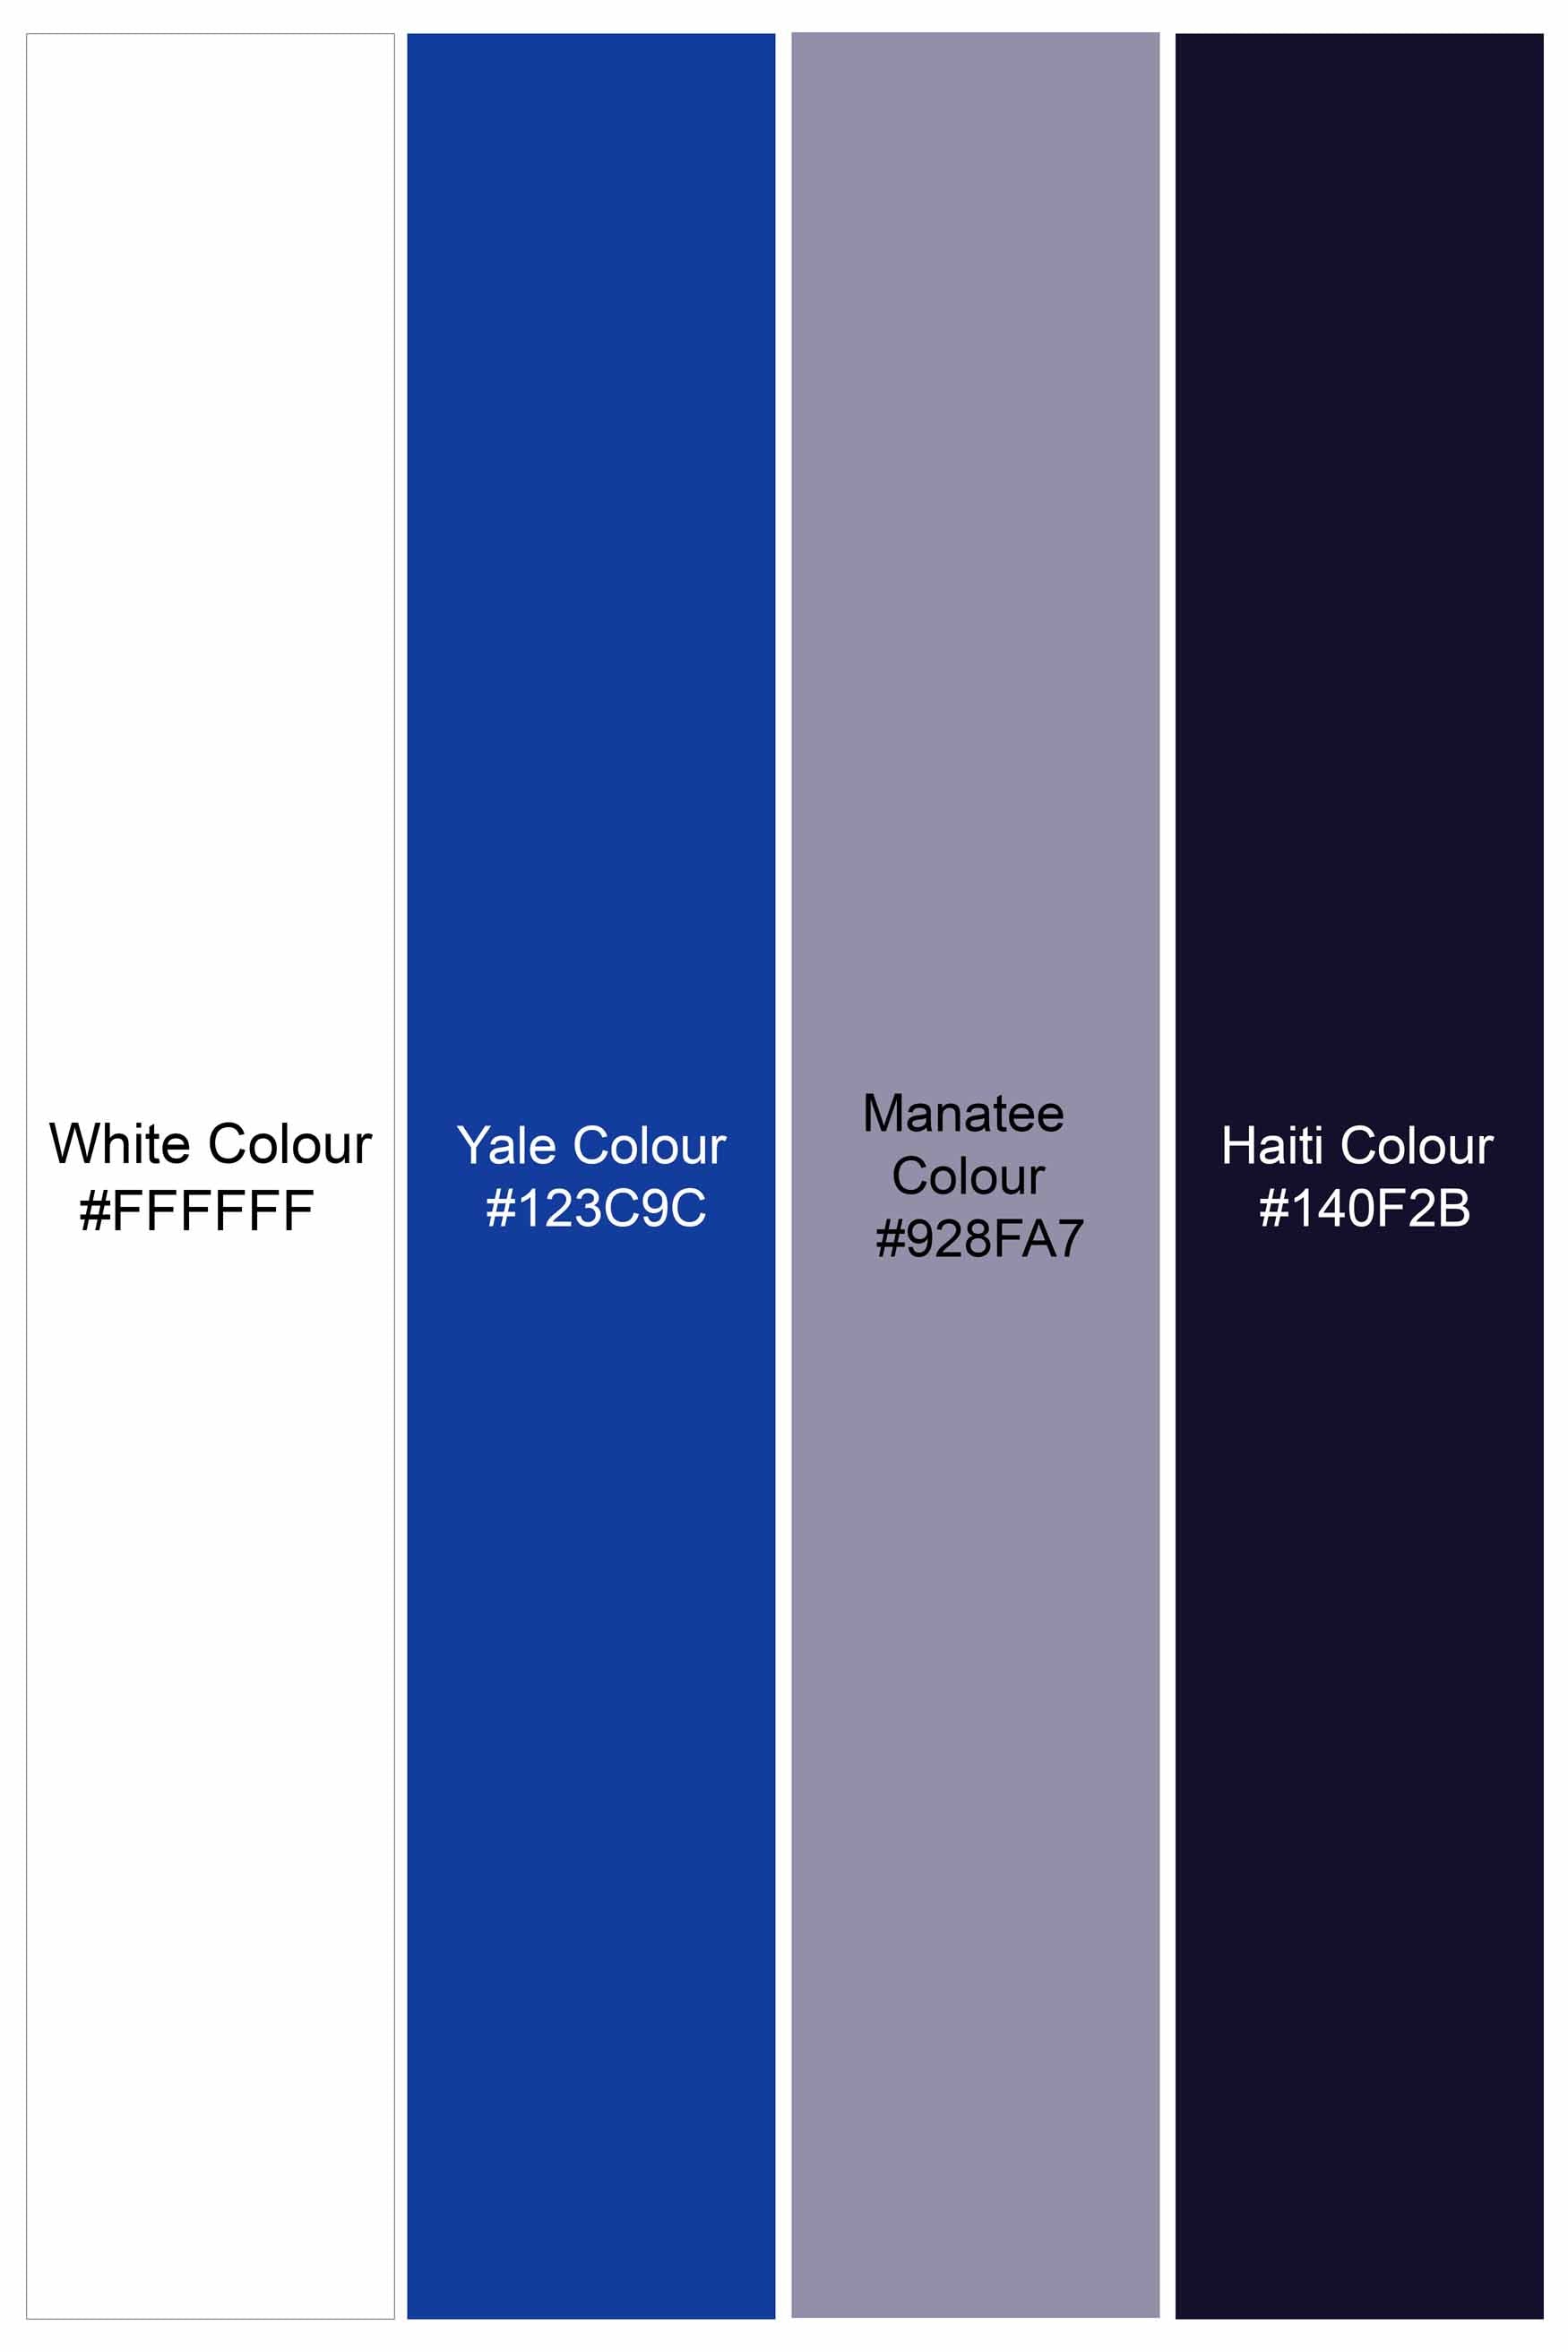 Bright White and Yale Blue Printed Subtle Sheen Super Soft Premium Cotton Kurta Shirt 11419-KS-38, 11419-KS-H-38, 11419-KS-39, 11419-KS-H-39, 11419-KS-40, 11419-KS-H-40, 11419-KS-42, 11419-KS-H-42, 11419-KS-44, 11419-KS-H-44, 11419-KS-46, 11419-KS-H-46, 11419-KS-48, 11419-KS-H-48, 11419-KS-50, 11419-KS-H-50, 11419-KS-52, 11419-KS-H-52